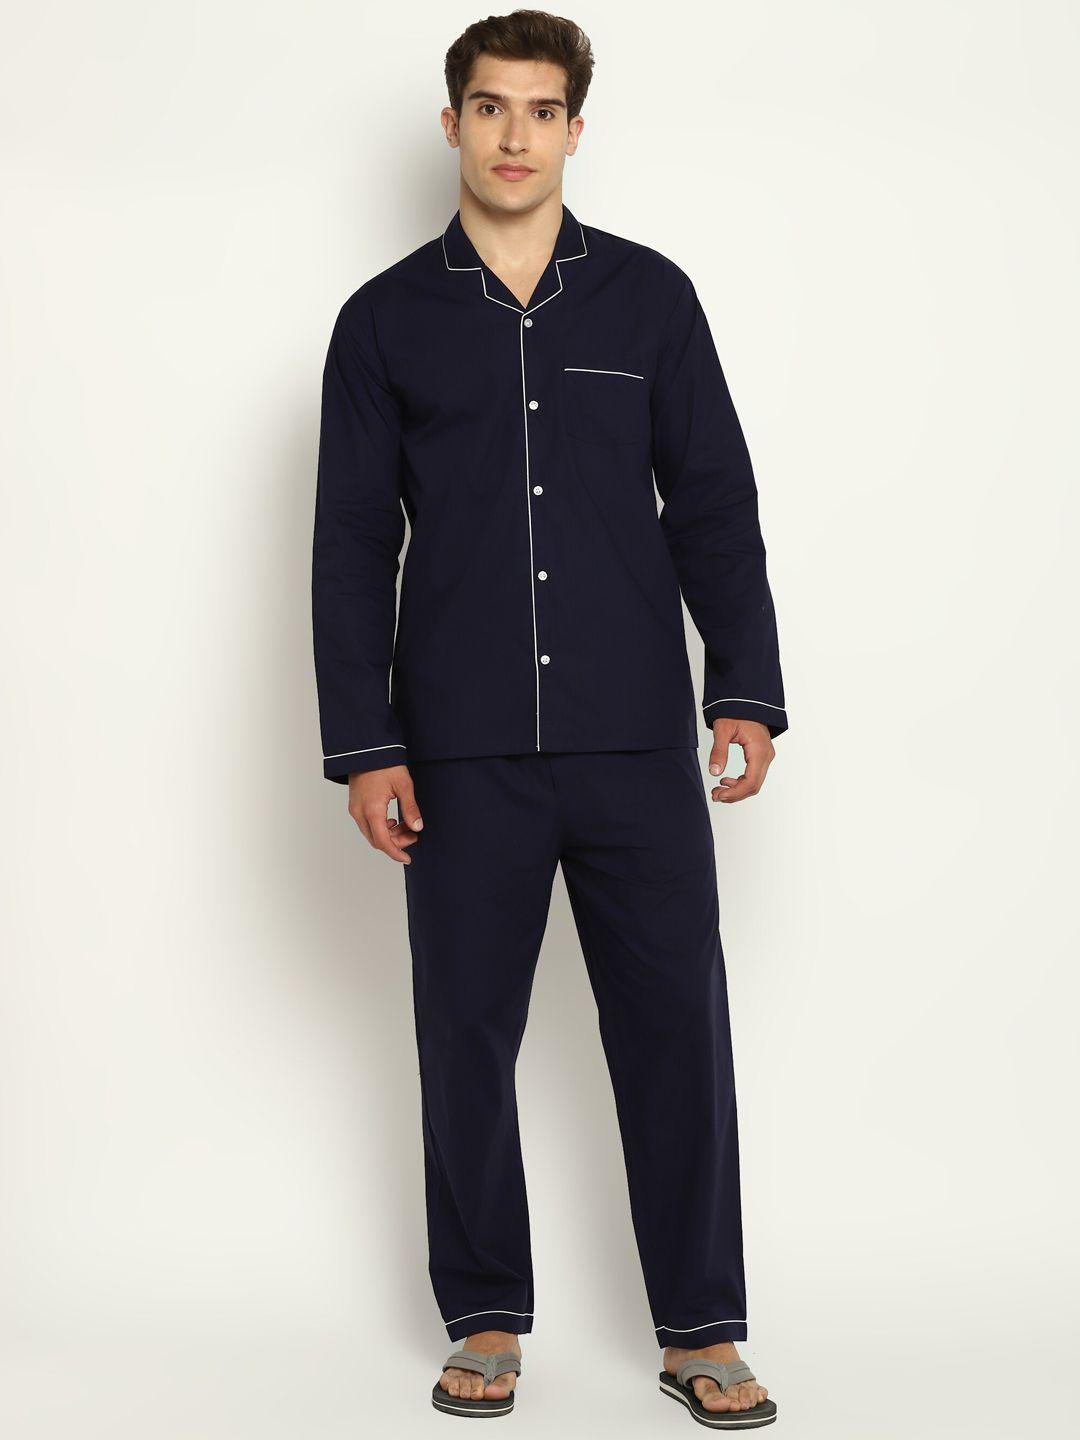 shopbloom pure cotton night suit mc-112-ls